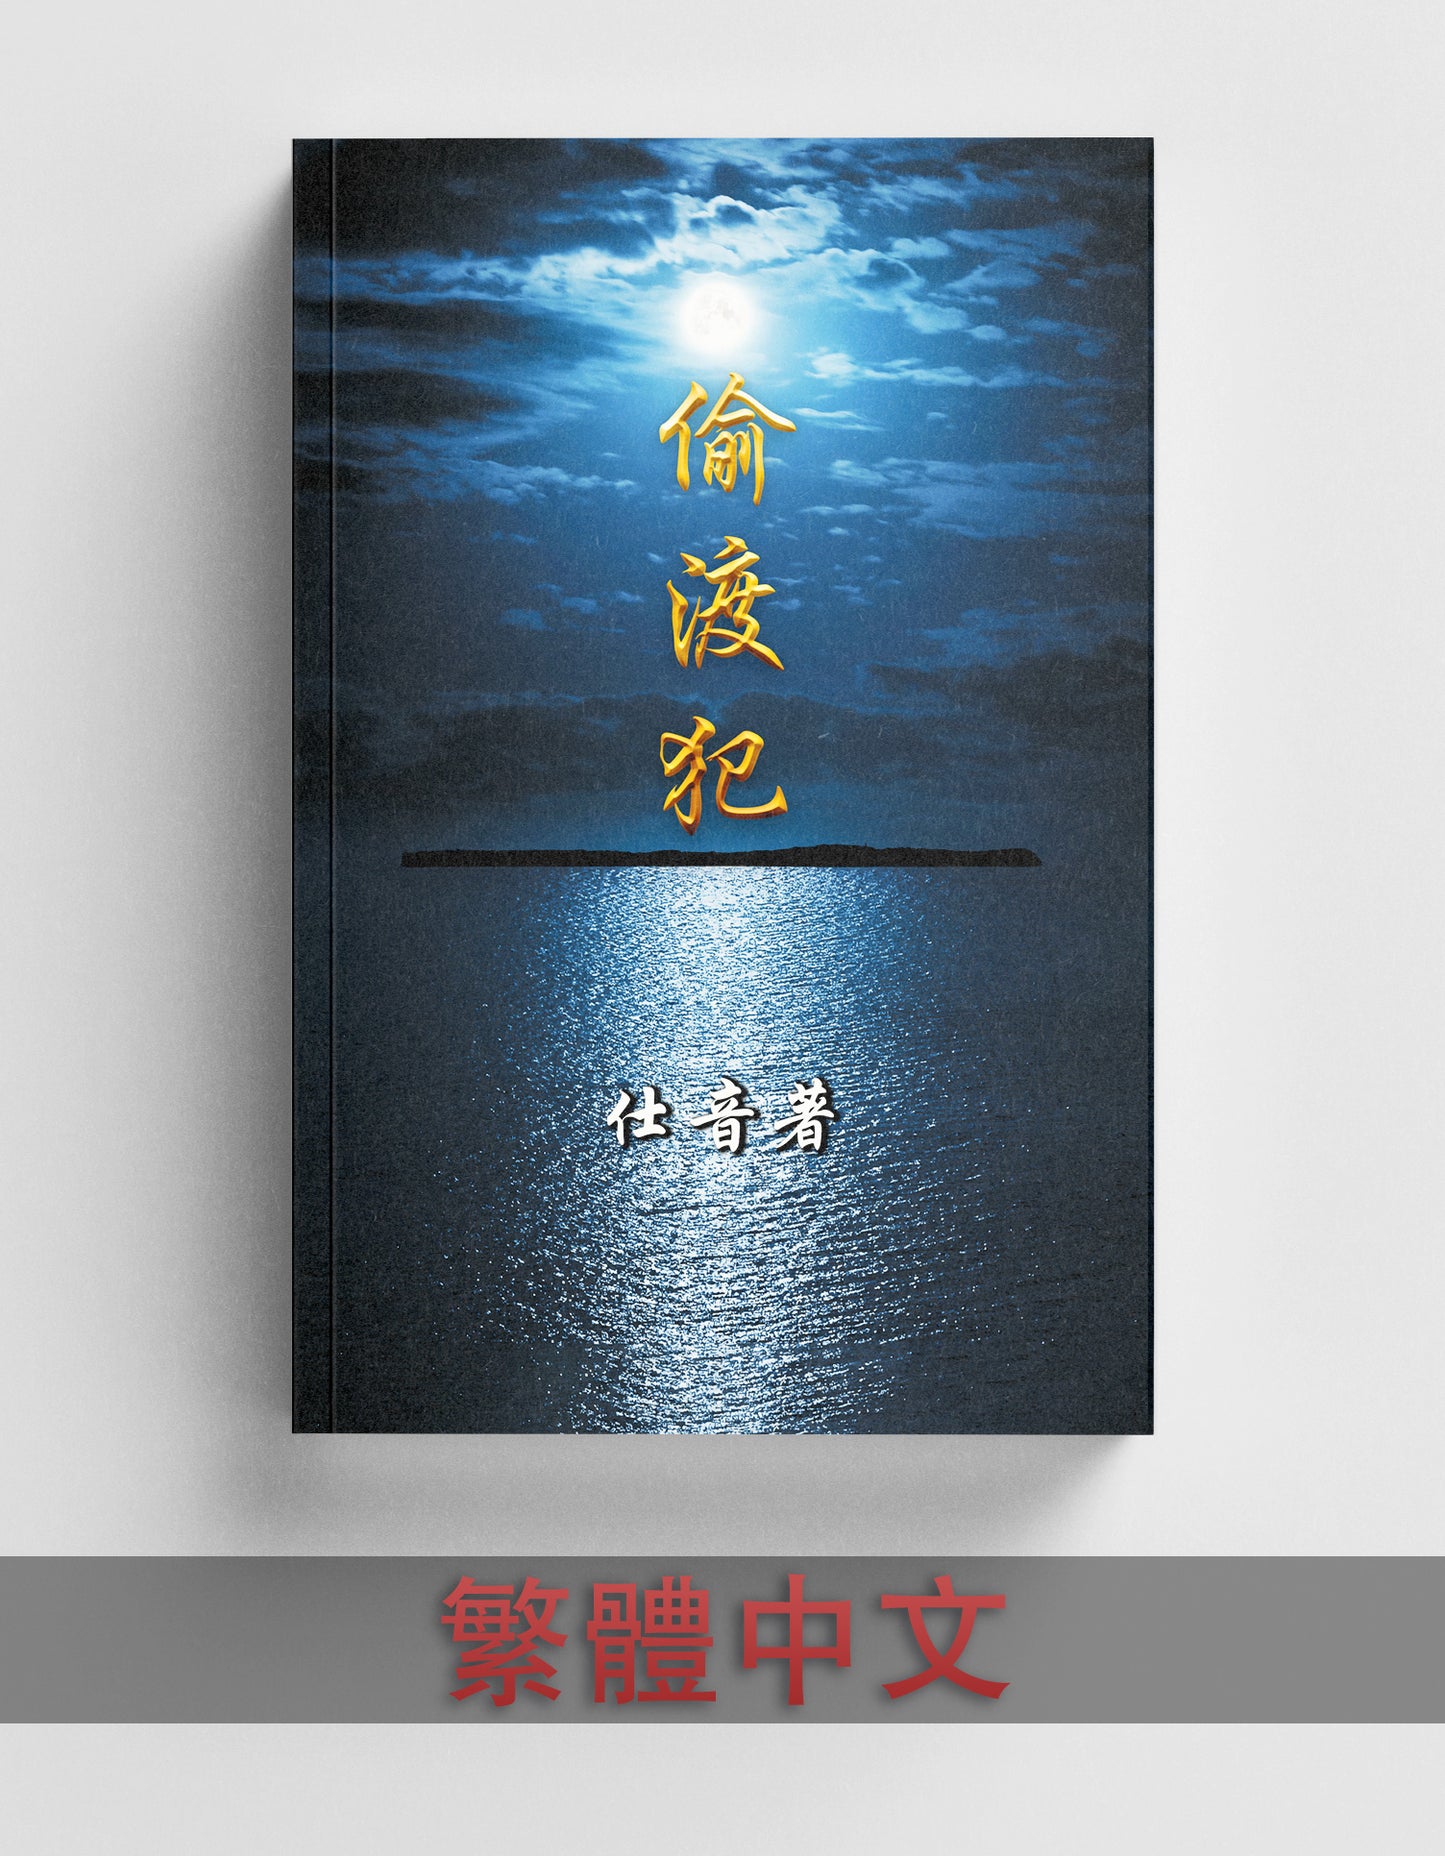 偷渡犯 Tou Du Fan (繁體中文) - Traditional Chinese Edition